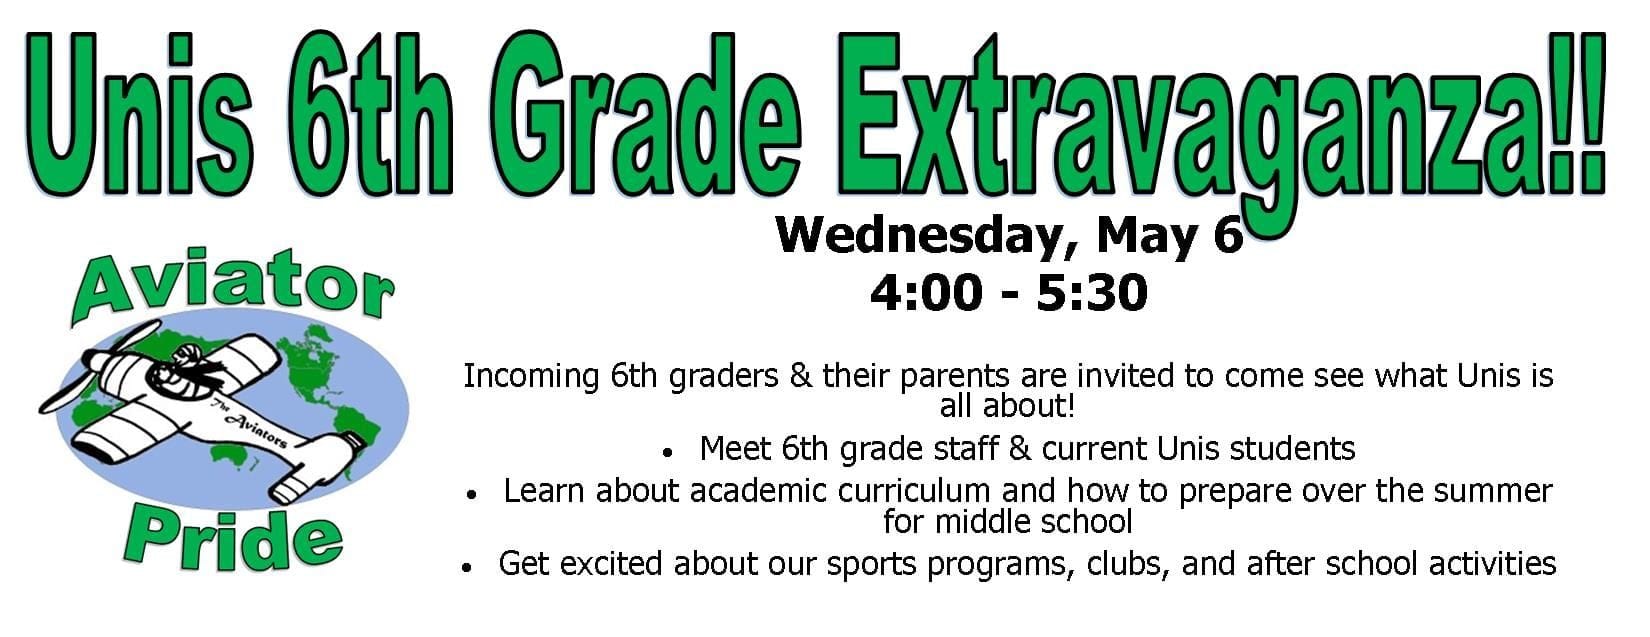 6th Grade Extravaganza on May 6th